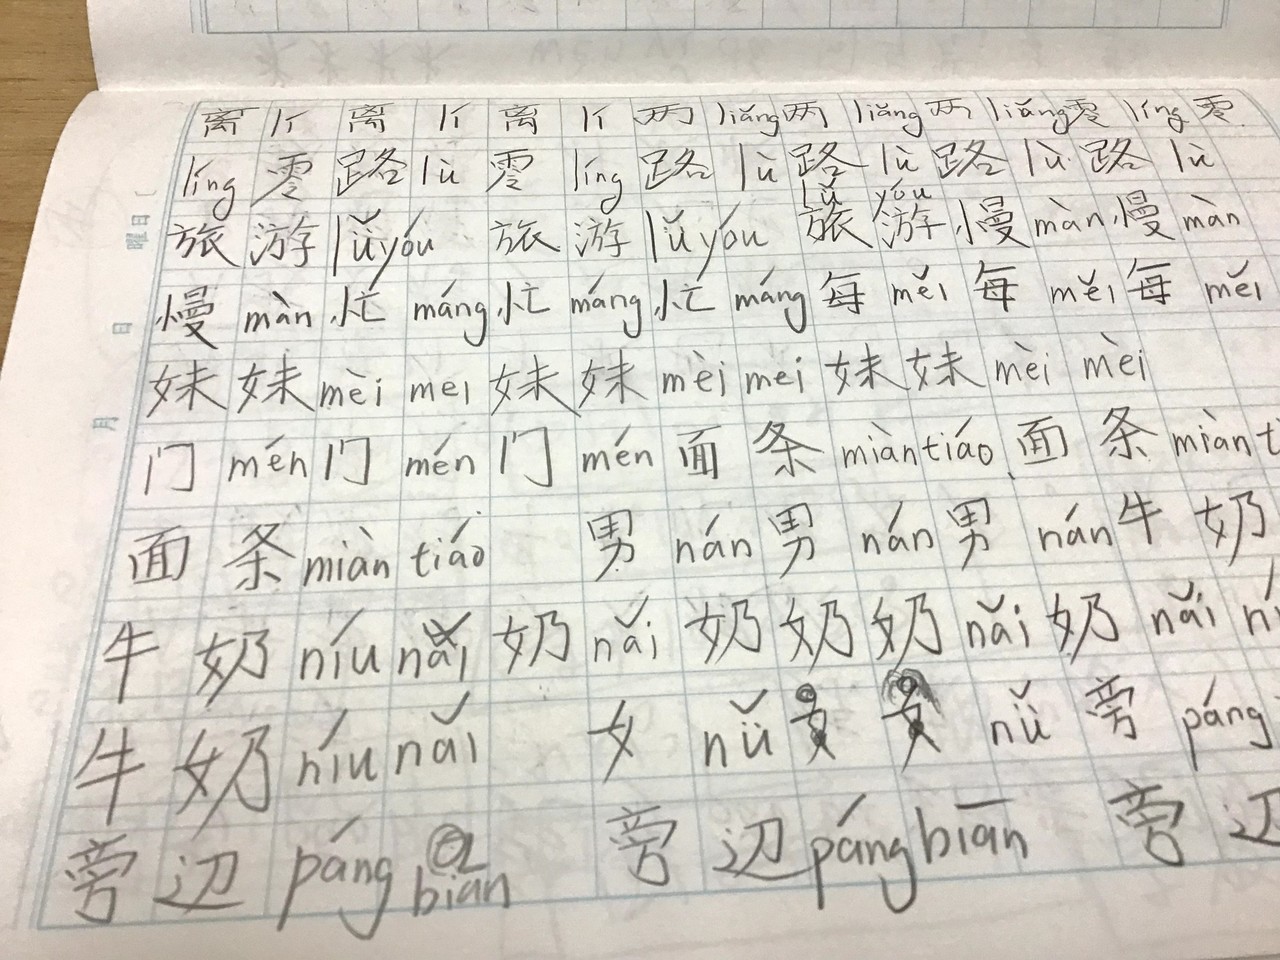 私が今までしてきた中国語の単語の覚え方で一番効率がよかった方法を